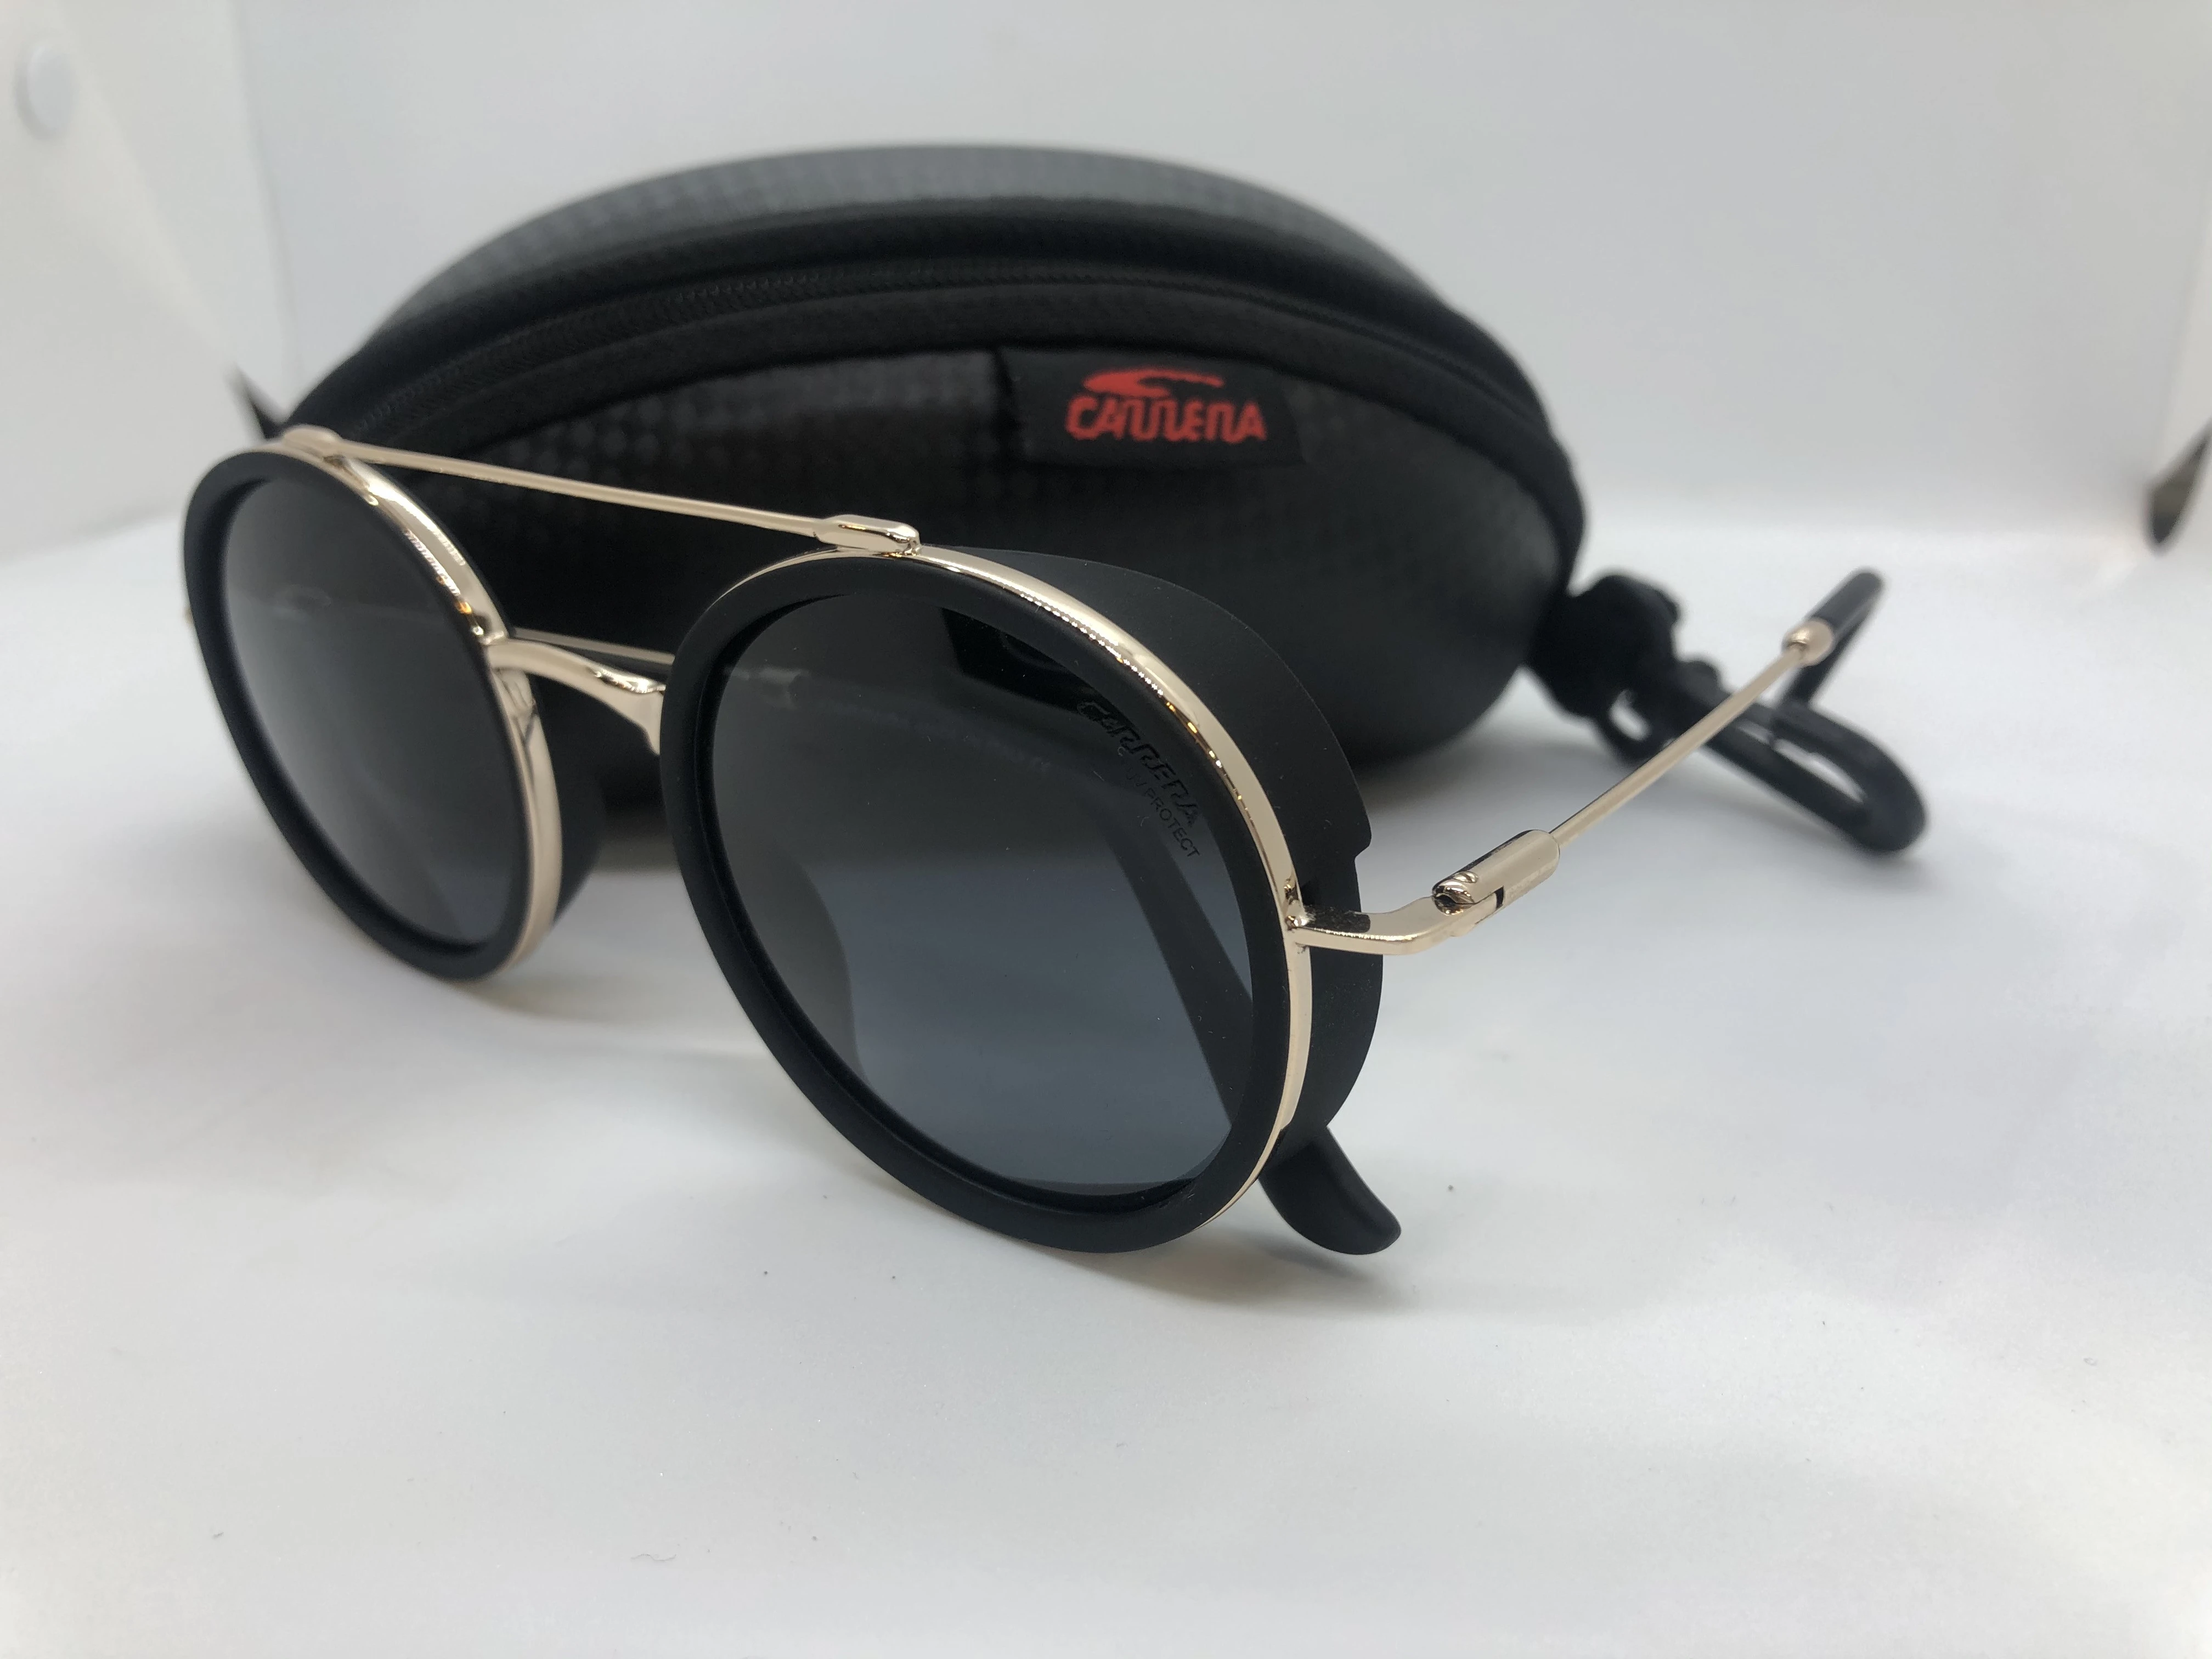 نظارة شمسية - سوداء من كاريرا - بإطارذهبي معدن - وعدسات سوداء - للرجال